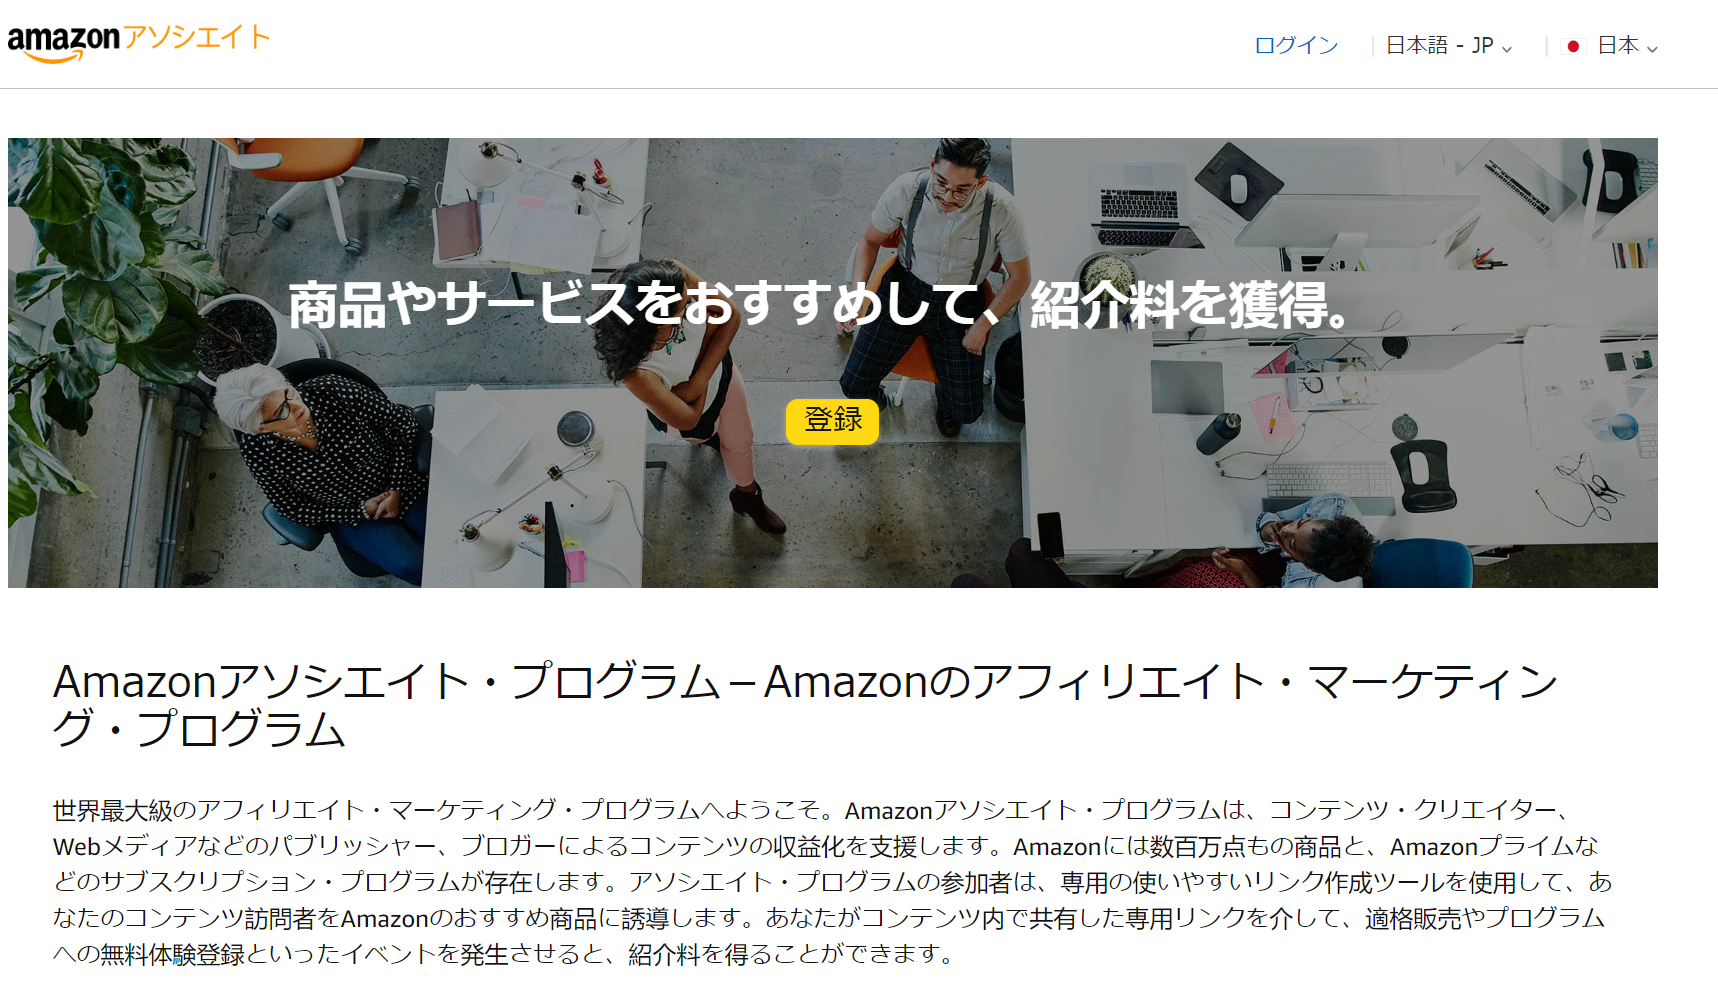 Amazonアソシエイトのページにアクセスし、[ 登録 ]ボタンを押す